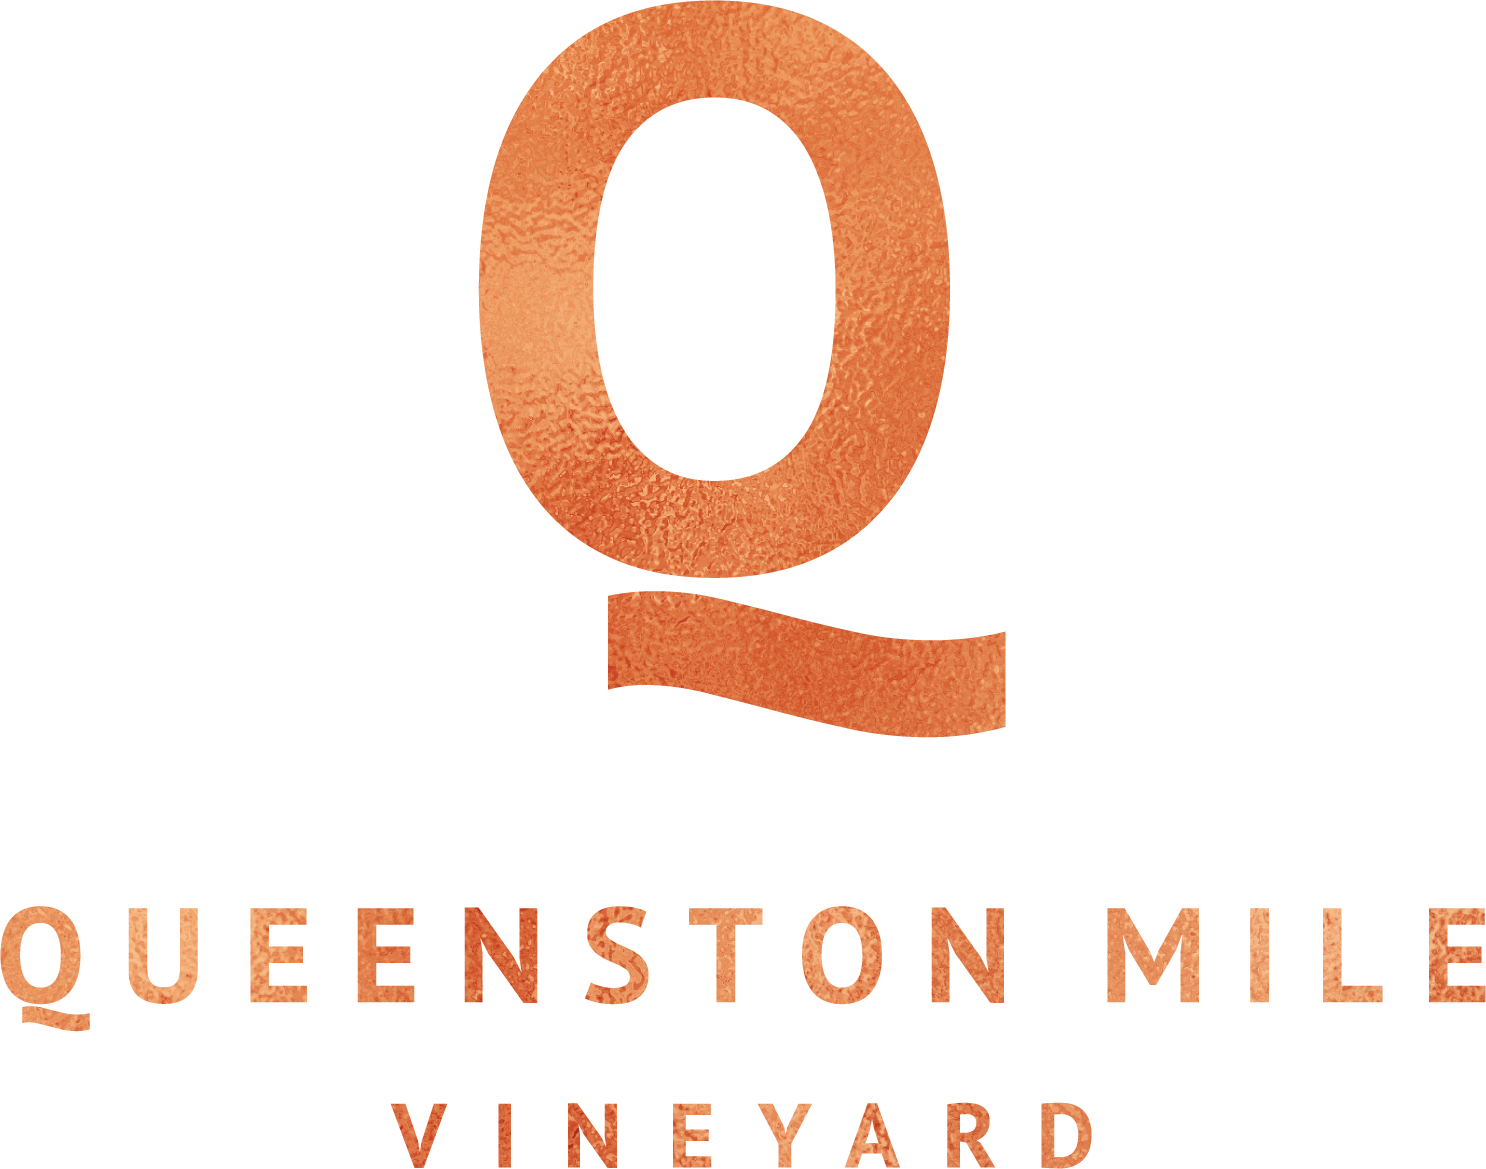 Queenston Mile Vineyard Winery & Wine Club, Winery - Queenston Mile Vineyard (1486x1169), Png Download